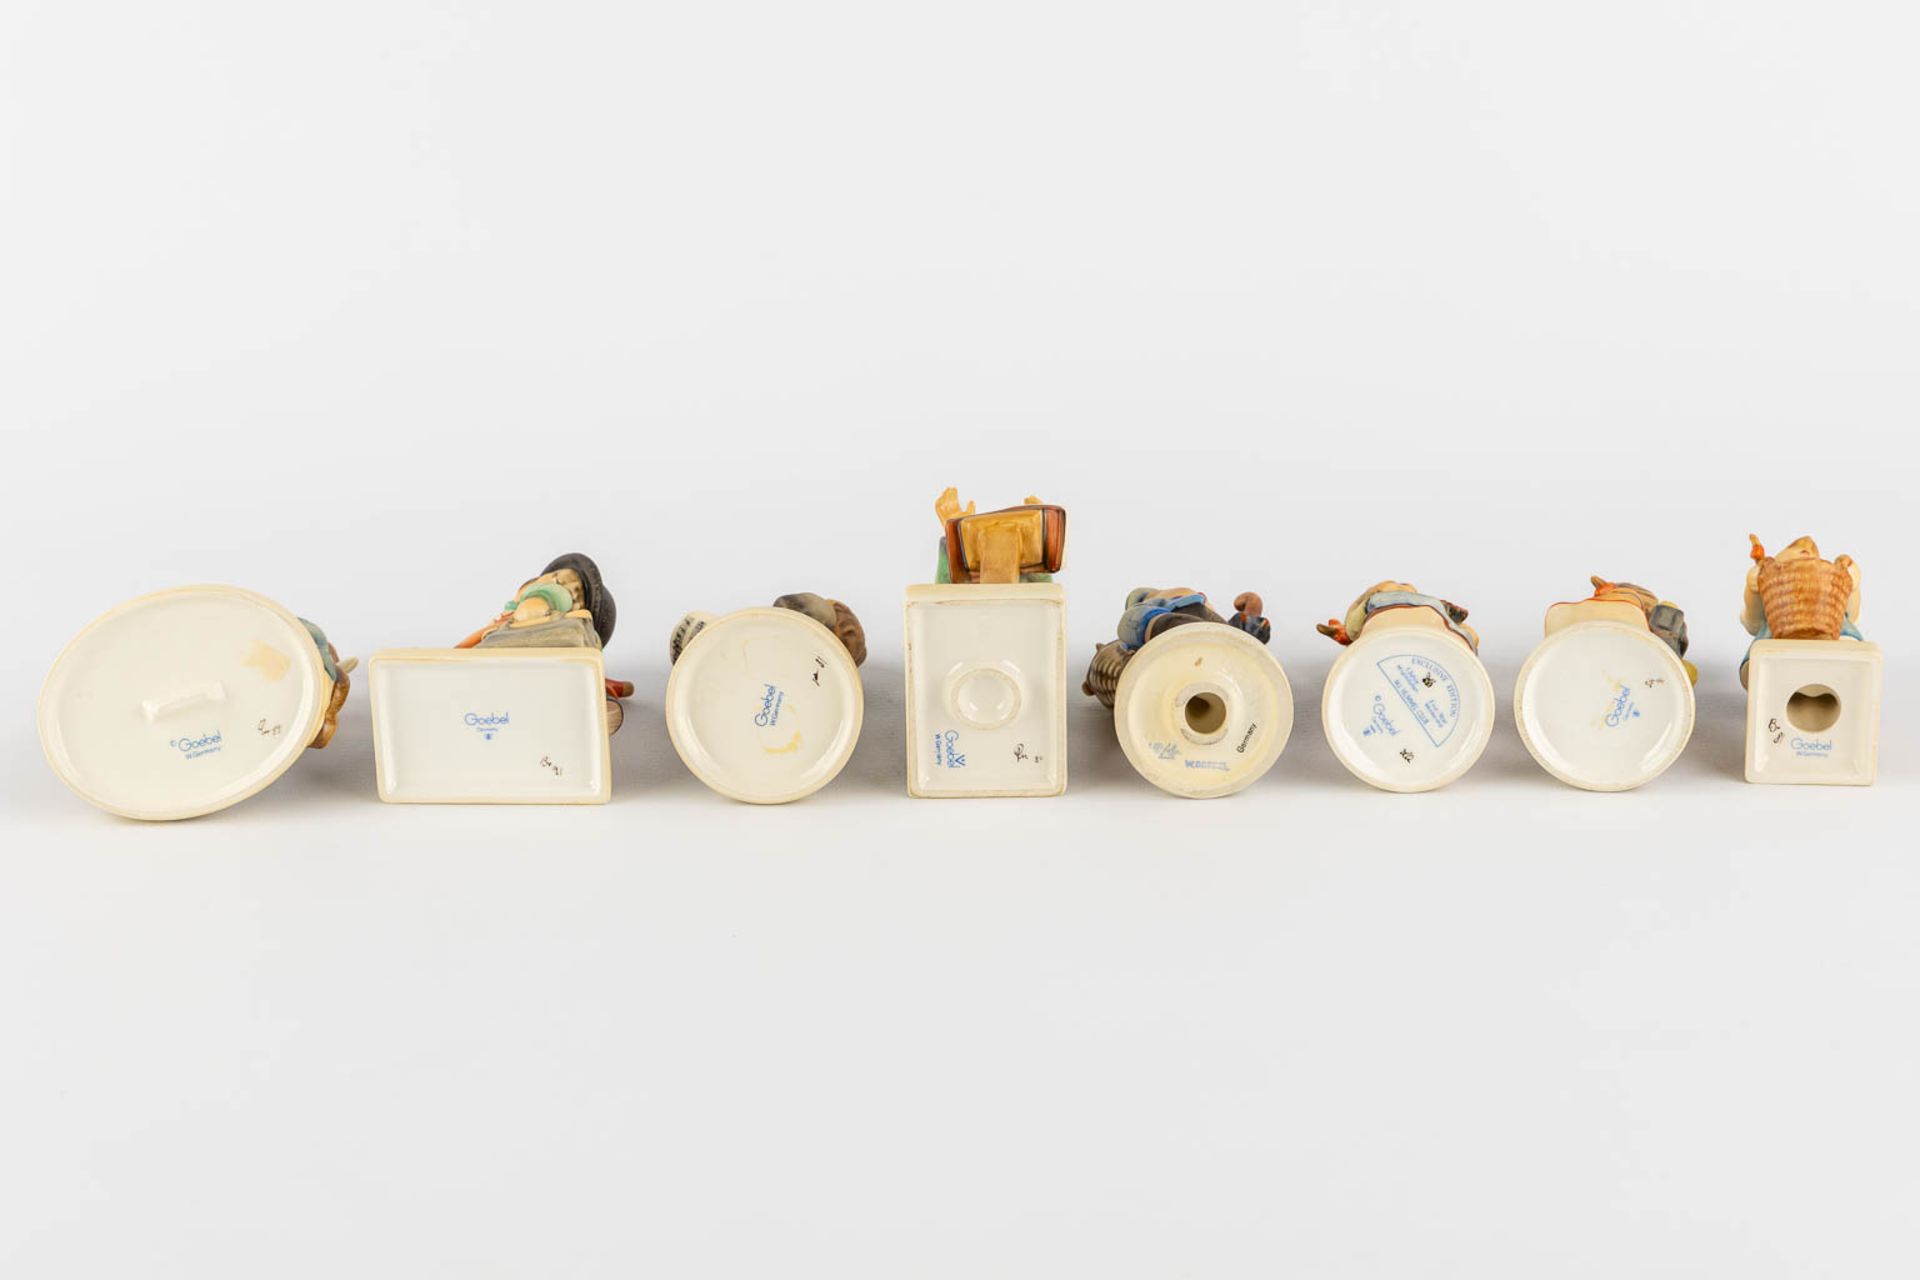 Hummel, 15 figurines, polychrome porcelain. (H:13,5 cm) - Image 8 of 9